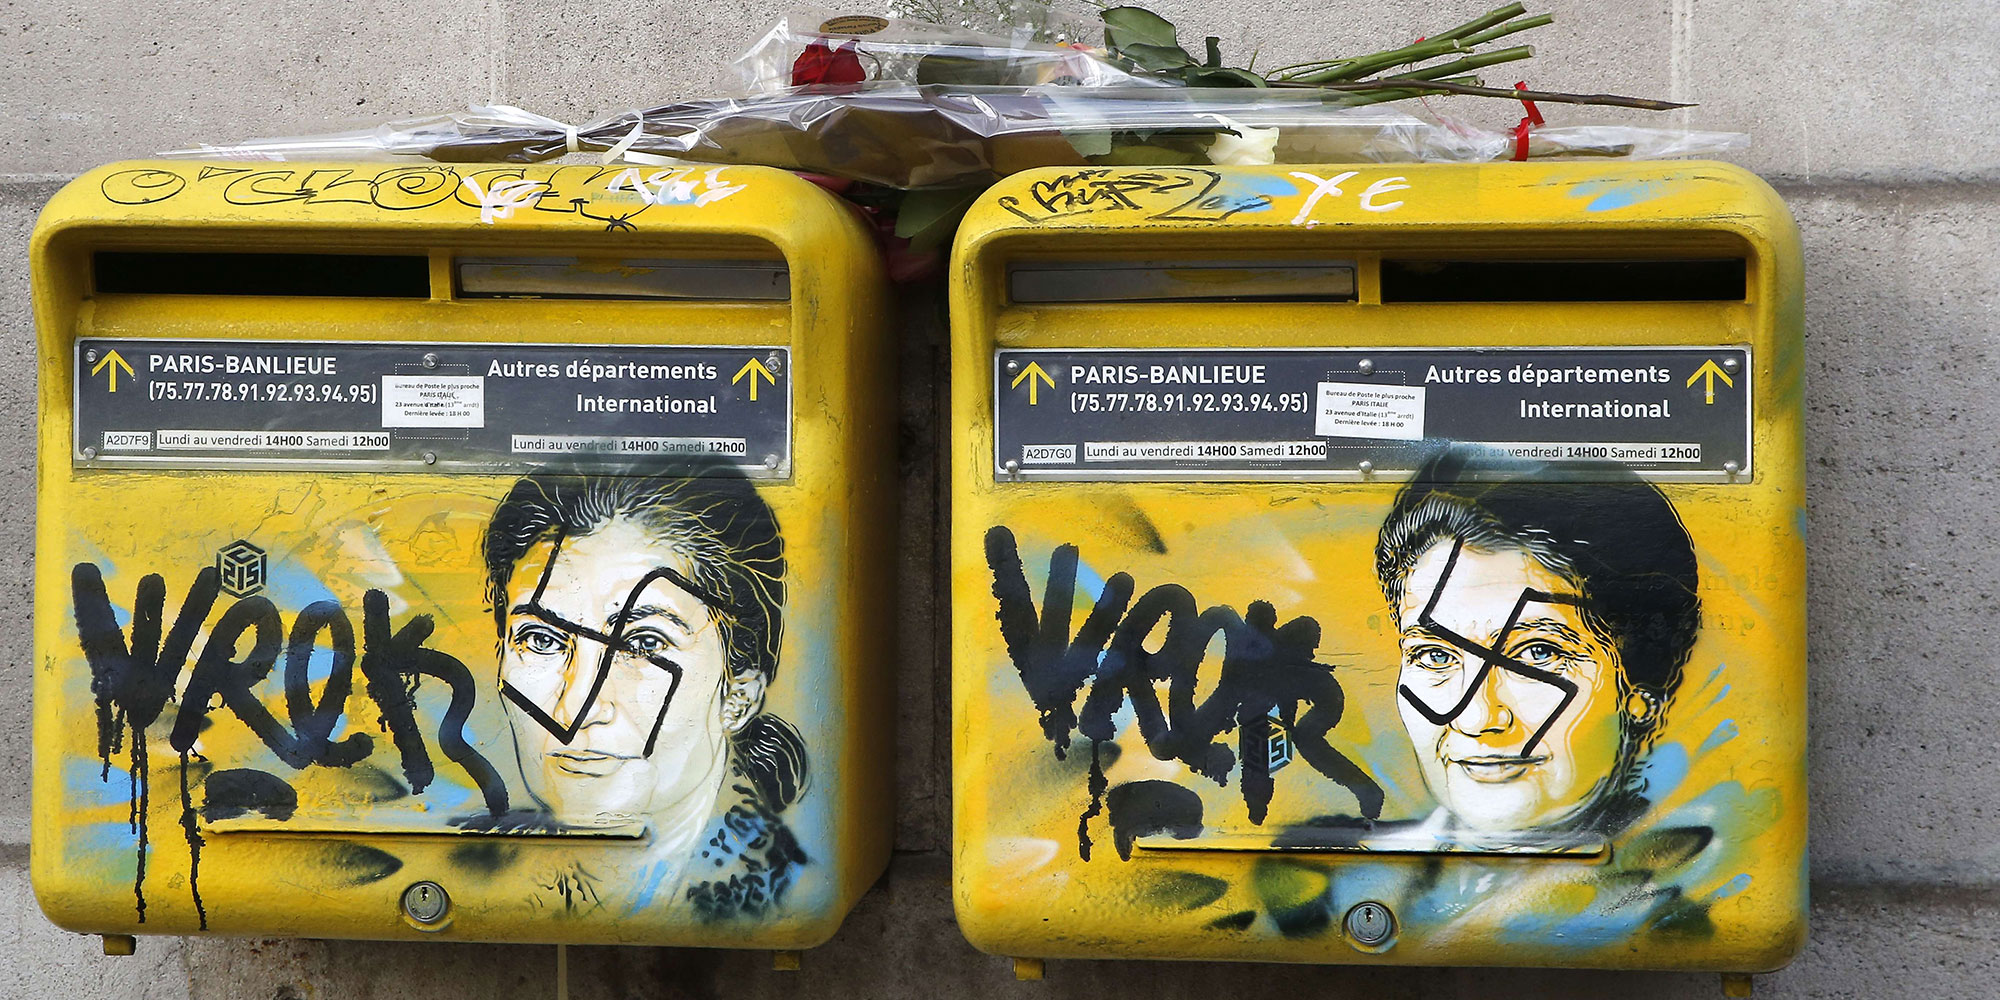 Des boîtes aux lettres avec un portrait de Simone Veil ont été vandalisées à Paris. Photo: Sipa Press.